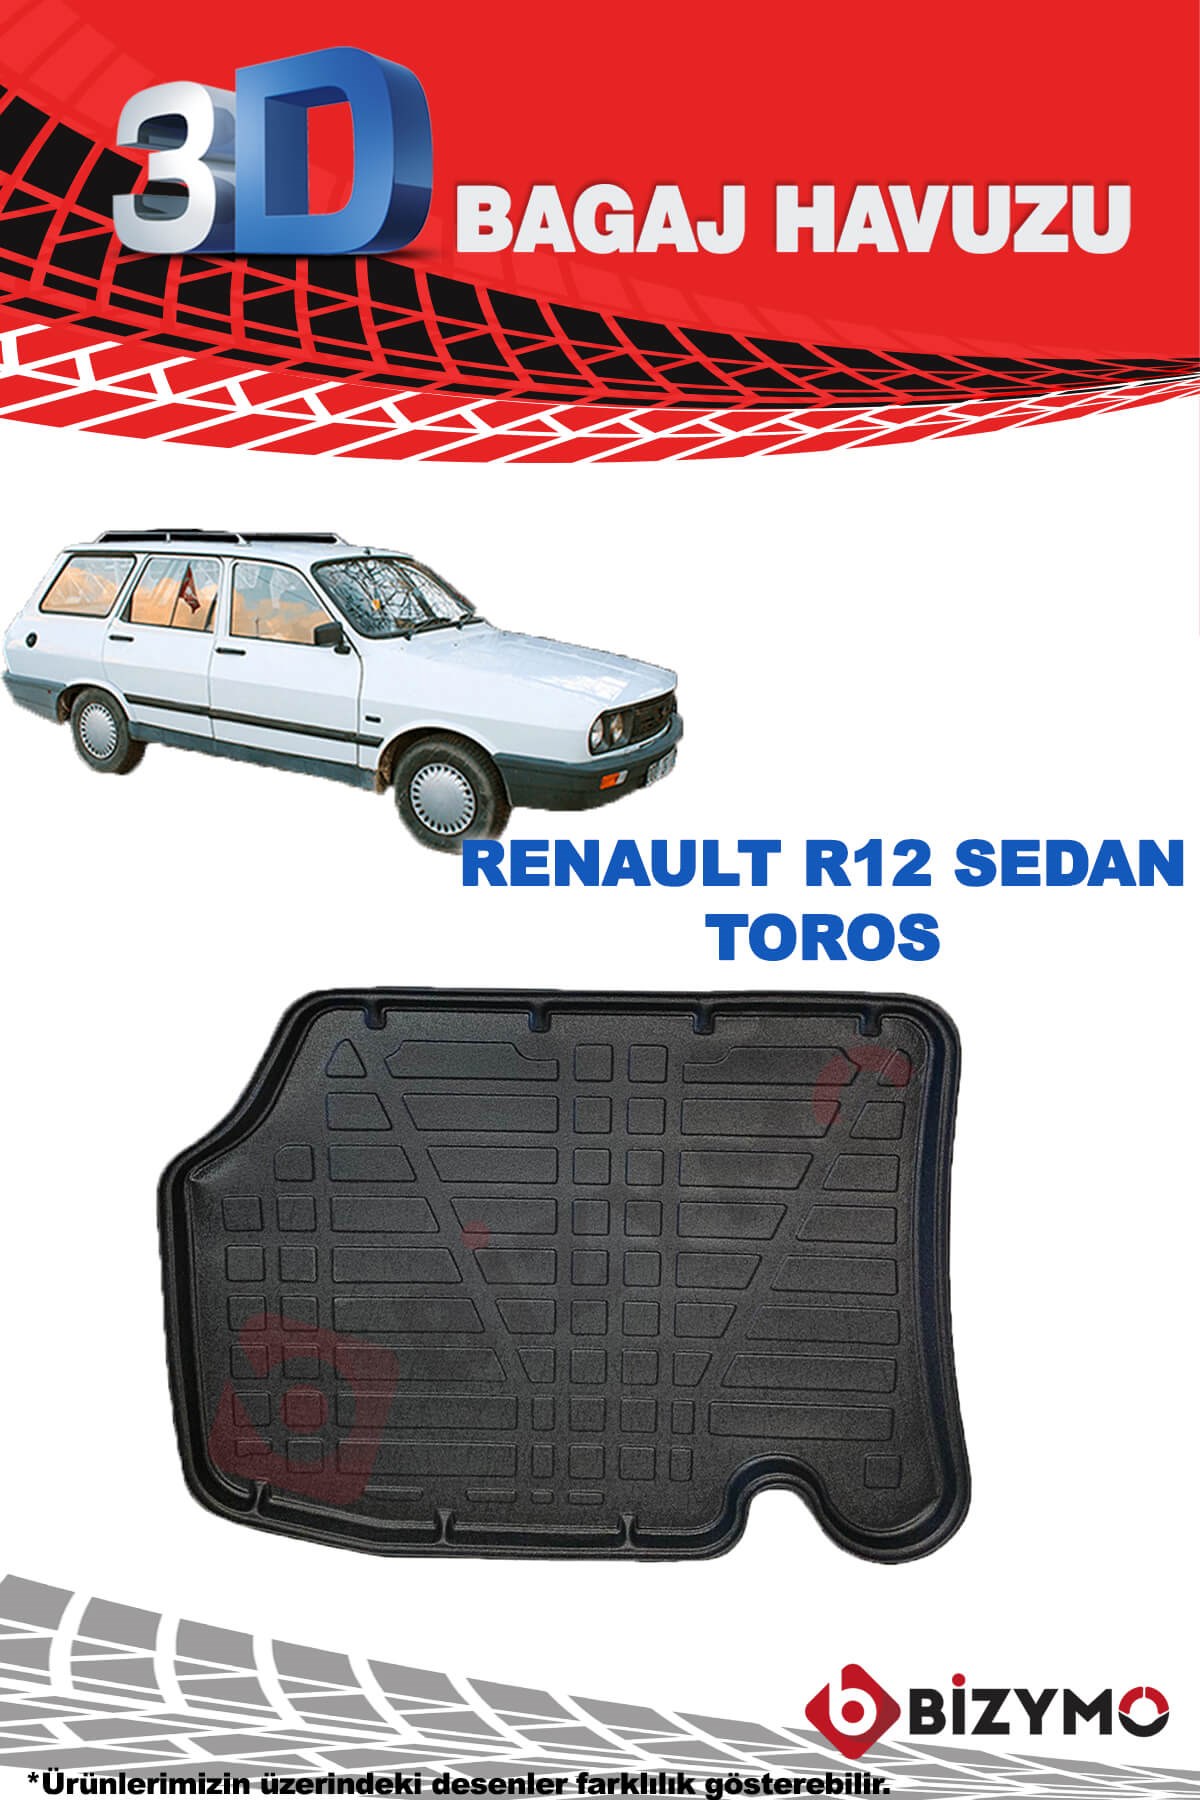 Renault R12 Sedan Toros 3D Bagaj Havuzu Bizymo - Bizim Oto